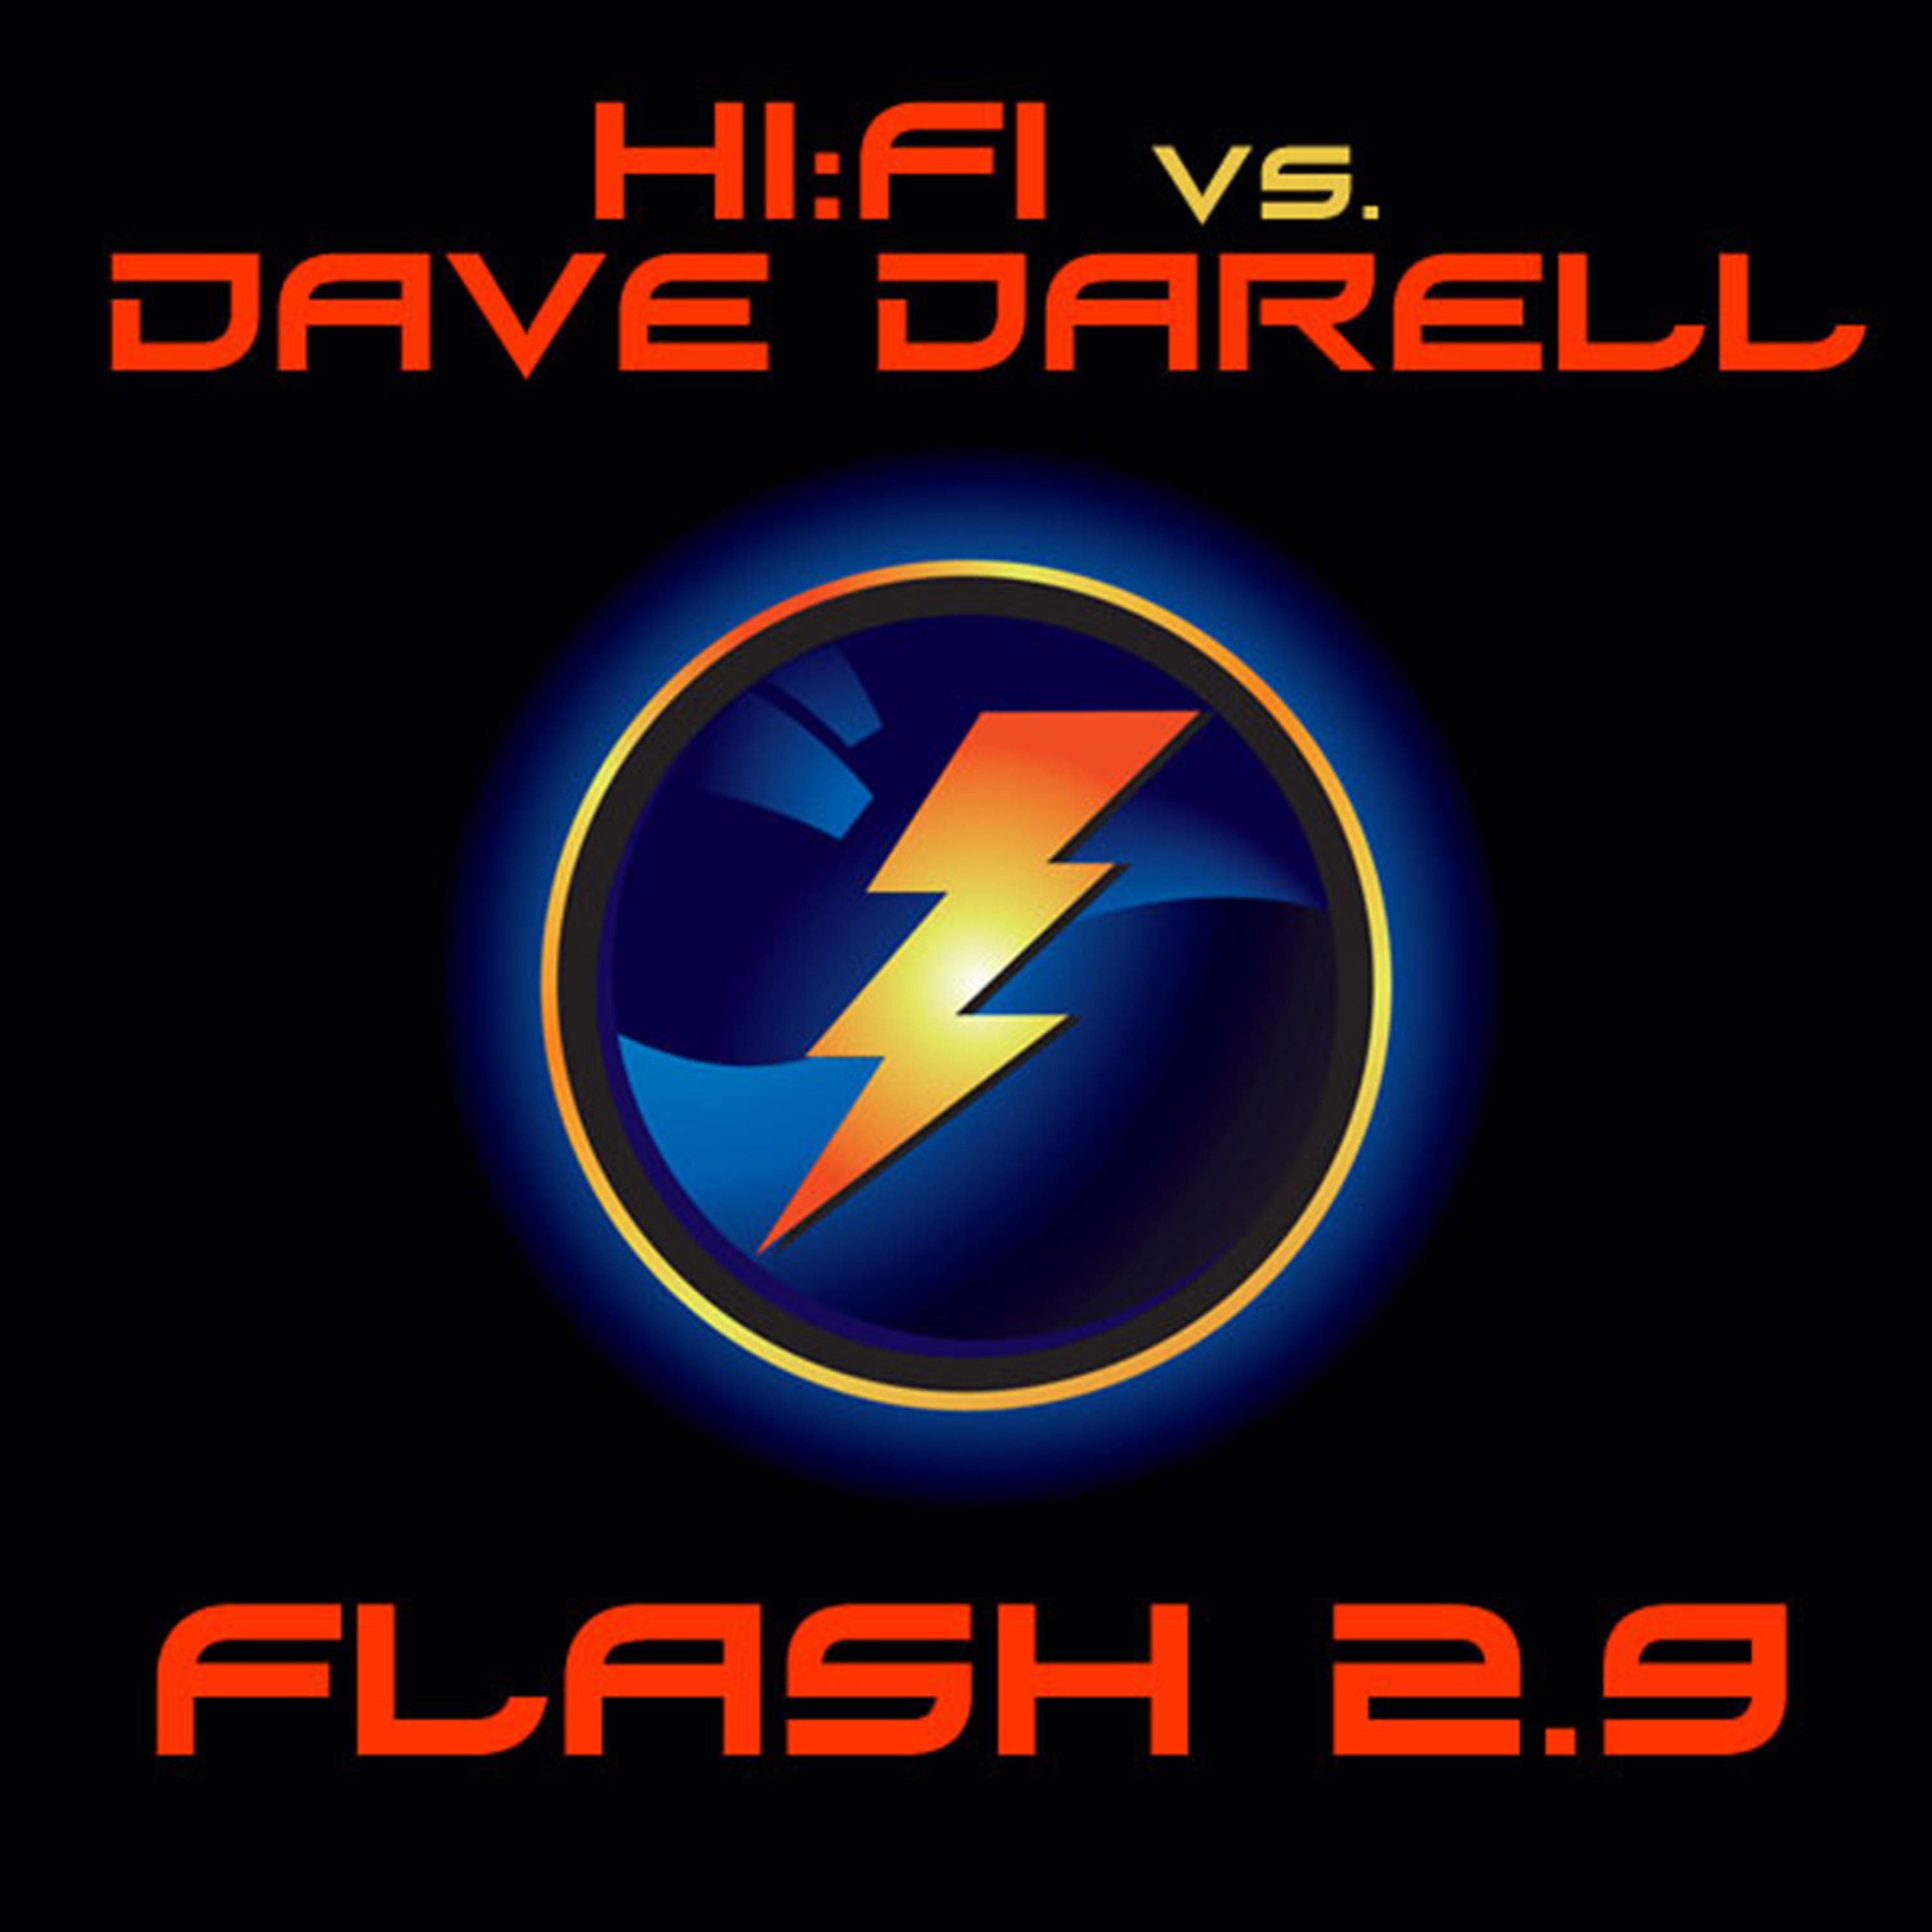 Flash 2.9 (Hi:Fi Original Radio Edit)